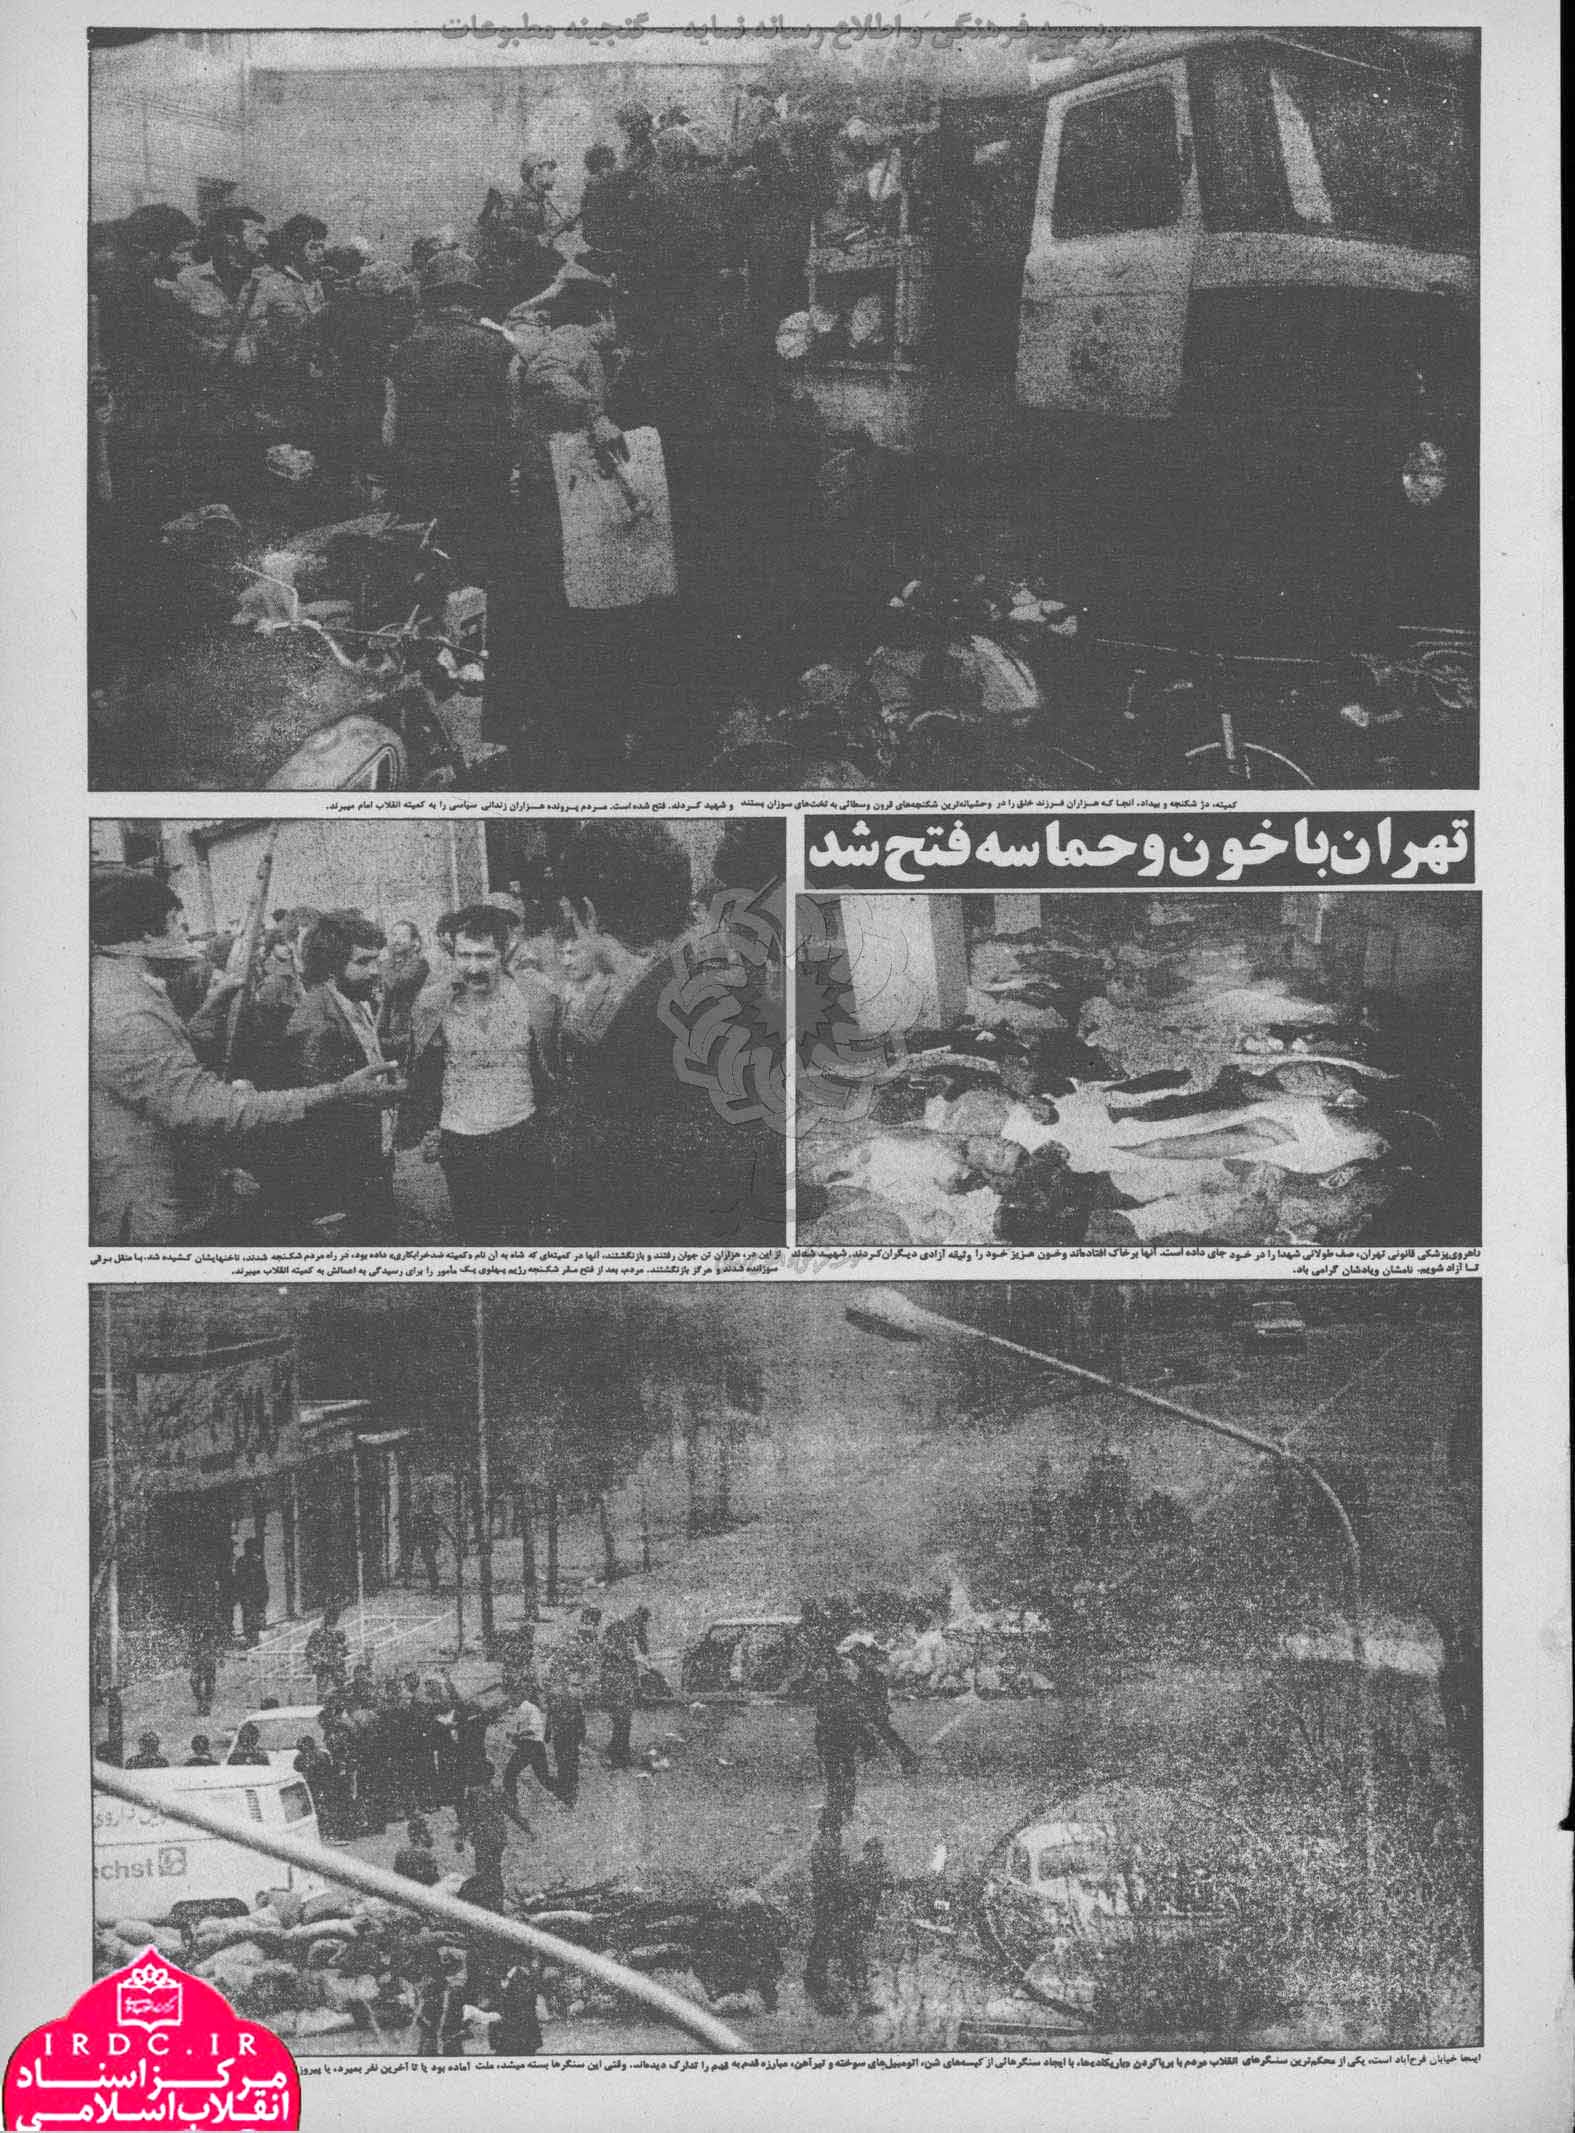 23 بهمن روایت مطبوعات از صبح پیروزی انقلاب اسلامی